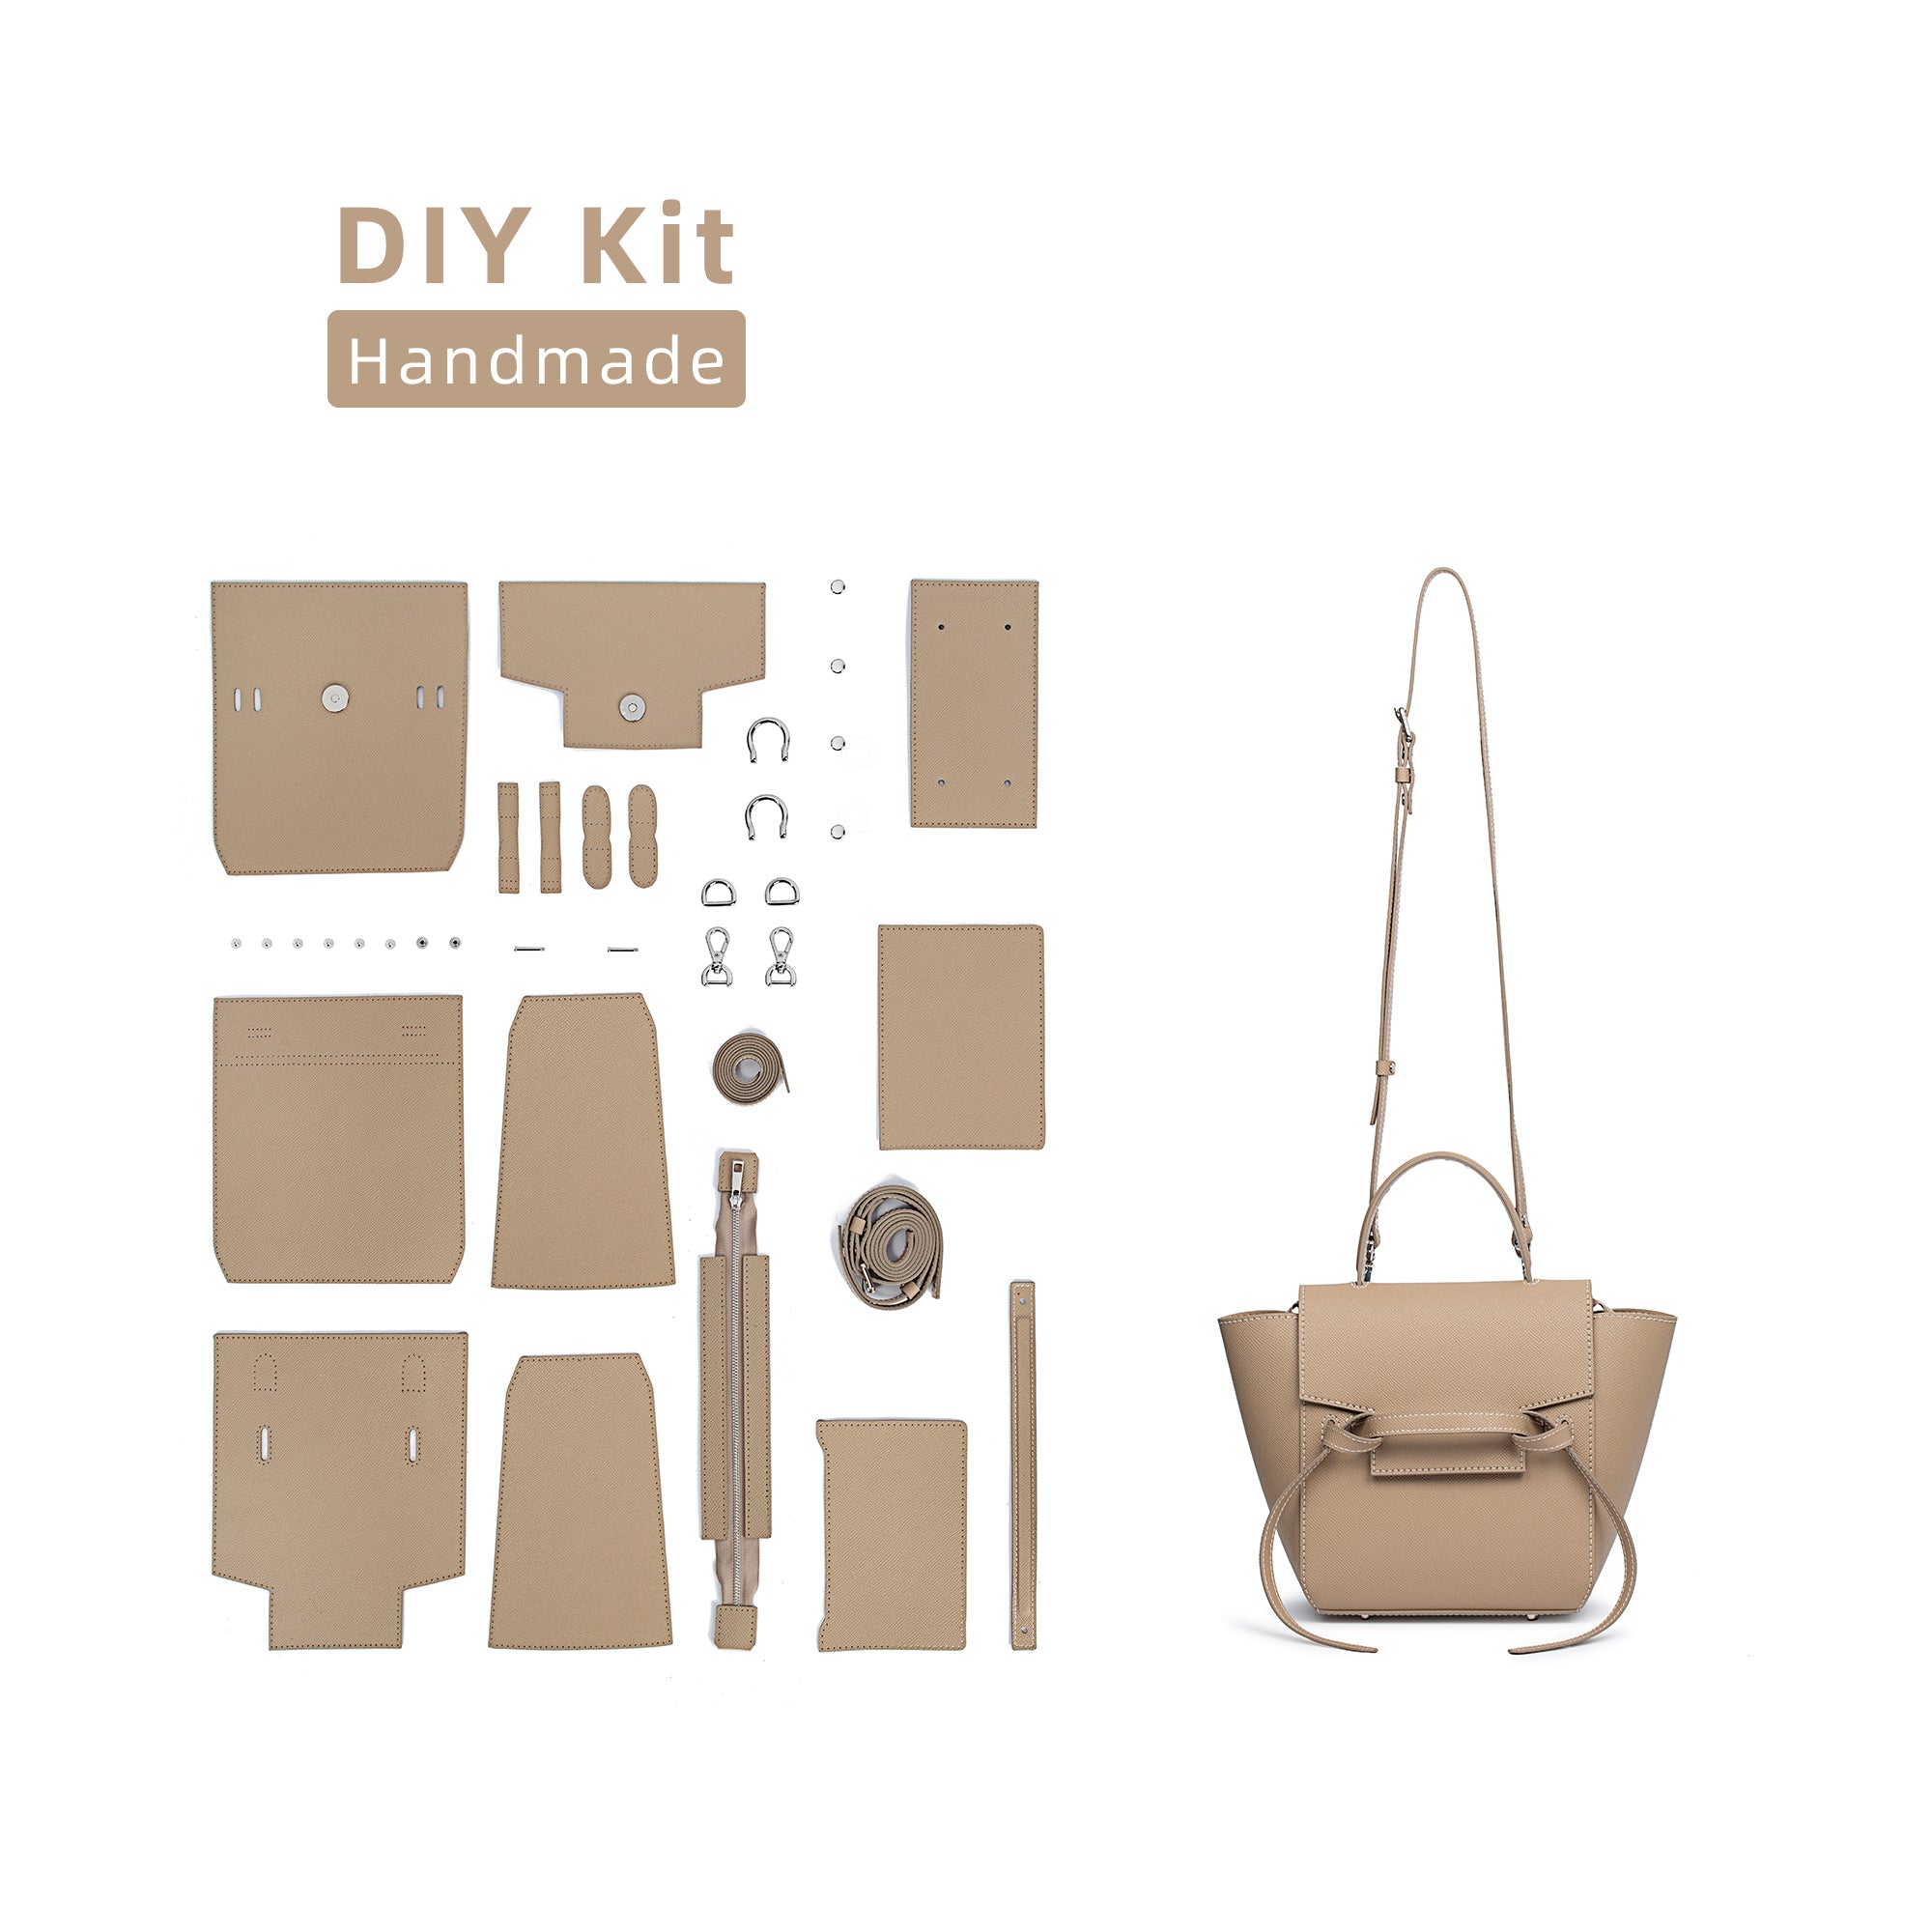 DIY Bag Kits - Catfish Bag